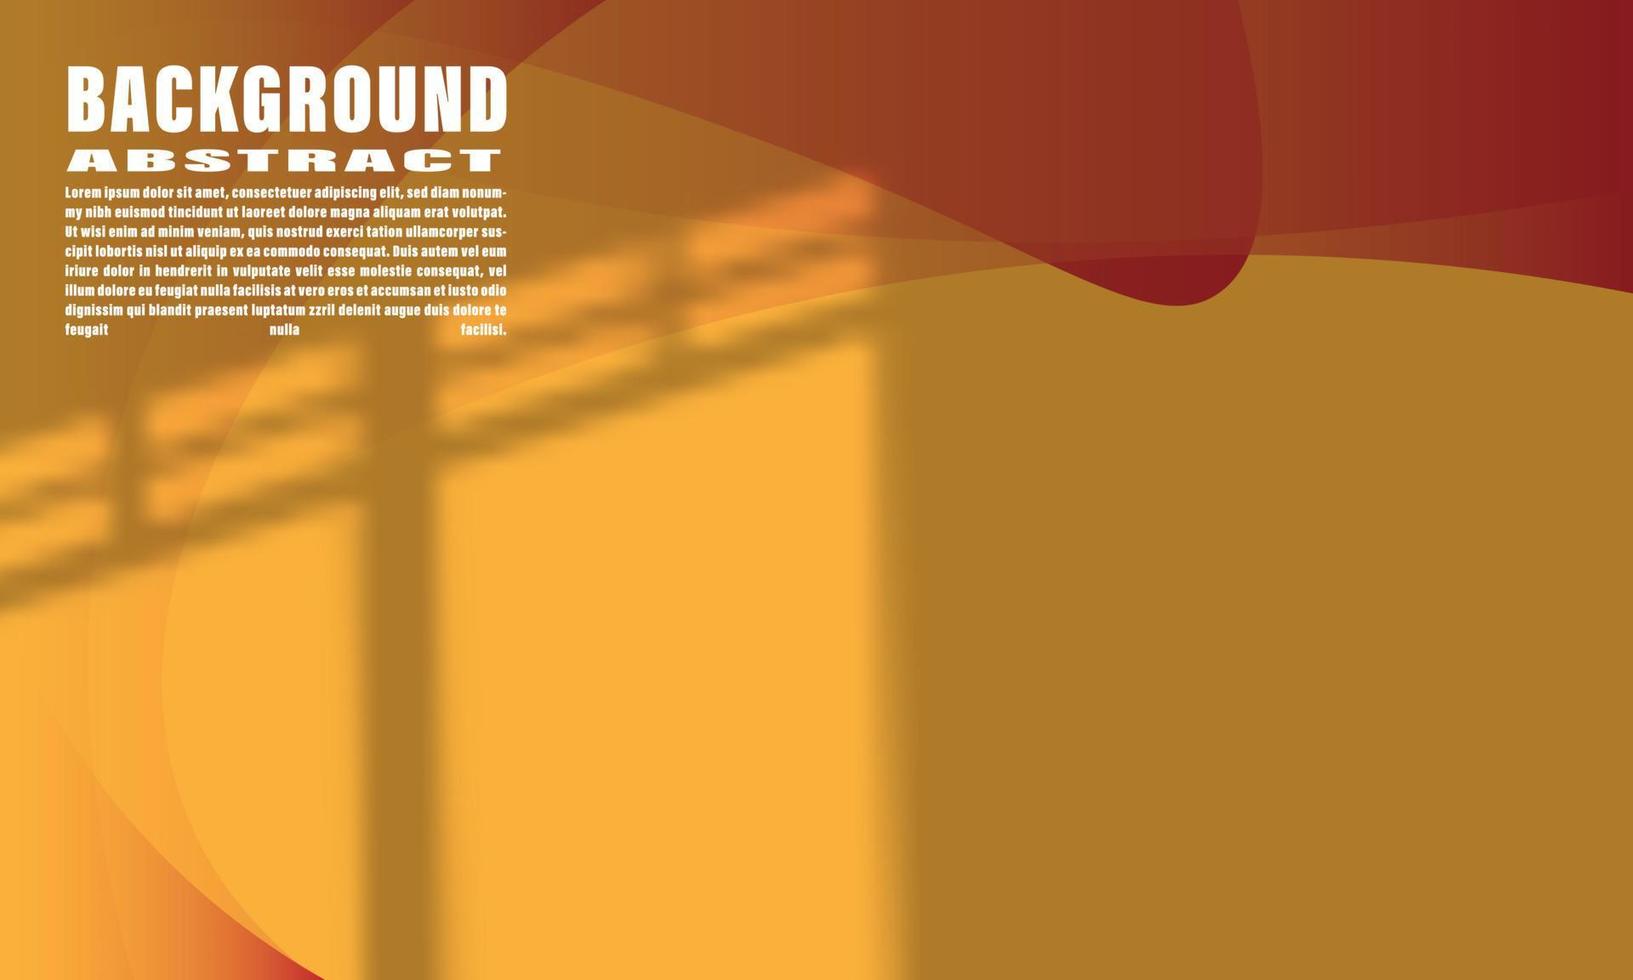 abstract achtergrond gemetrisch vloeistof kleurrijk Golf vorm oranje en rood met elegant modieus shdaow bedekking voor web ontwerp eps 10 vector